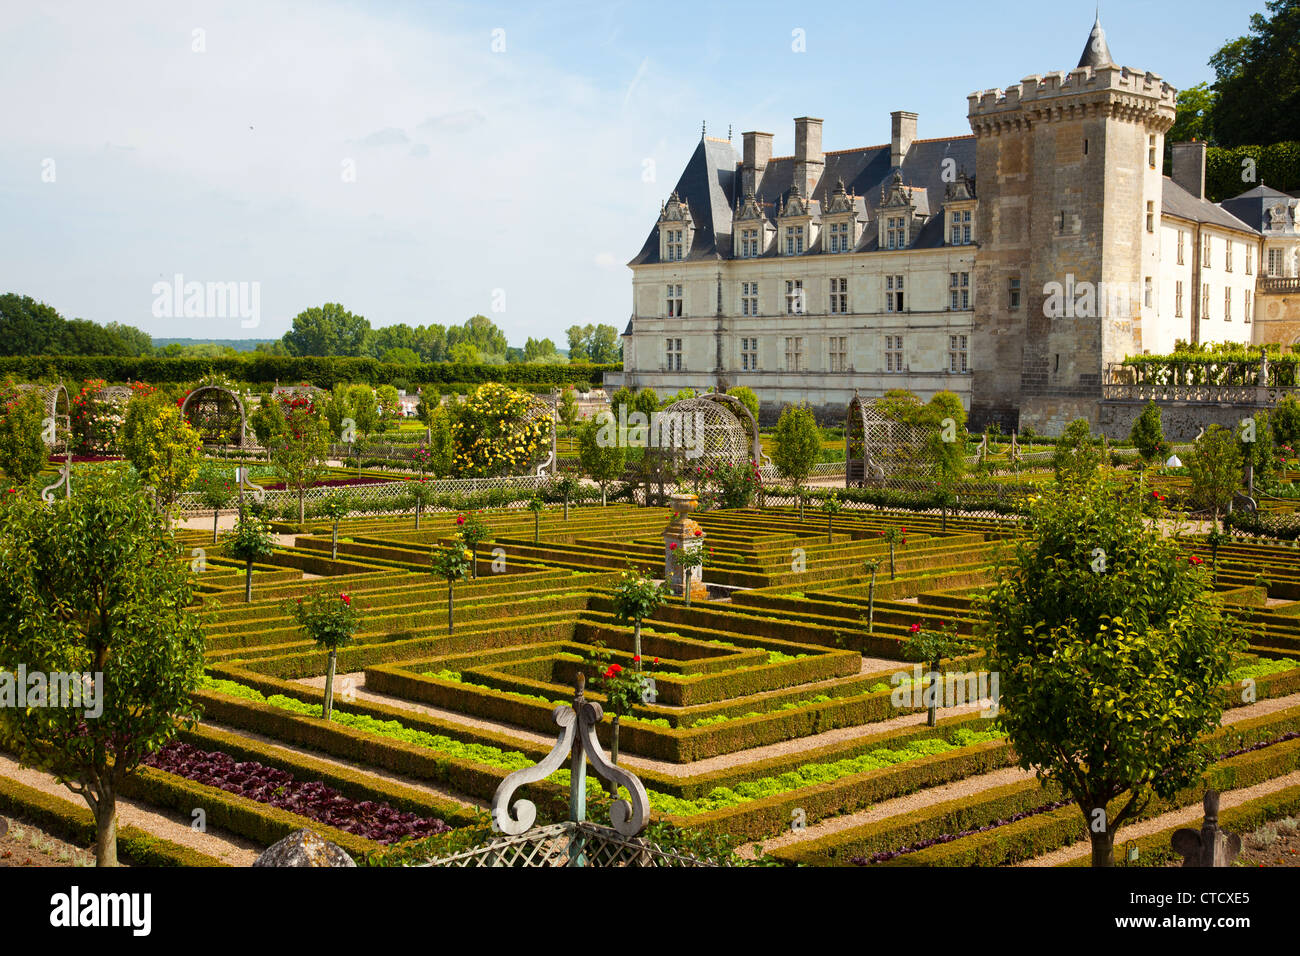 Les jardins de Villandry Chateau dans la vallée de la Loire de France. Banque D'Images